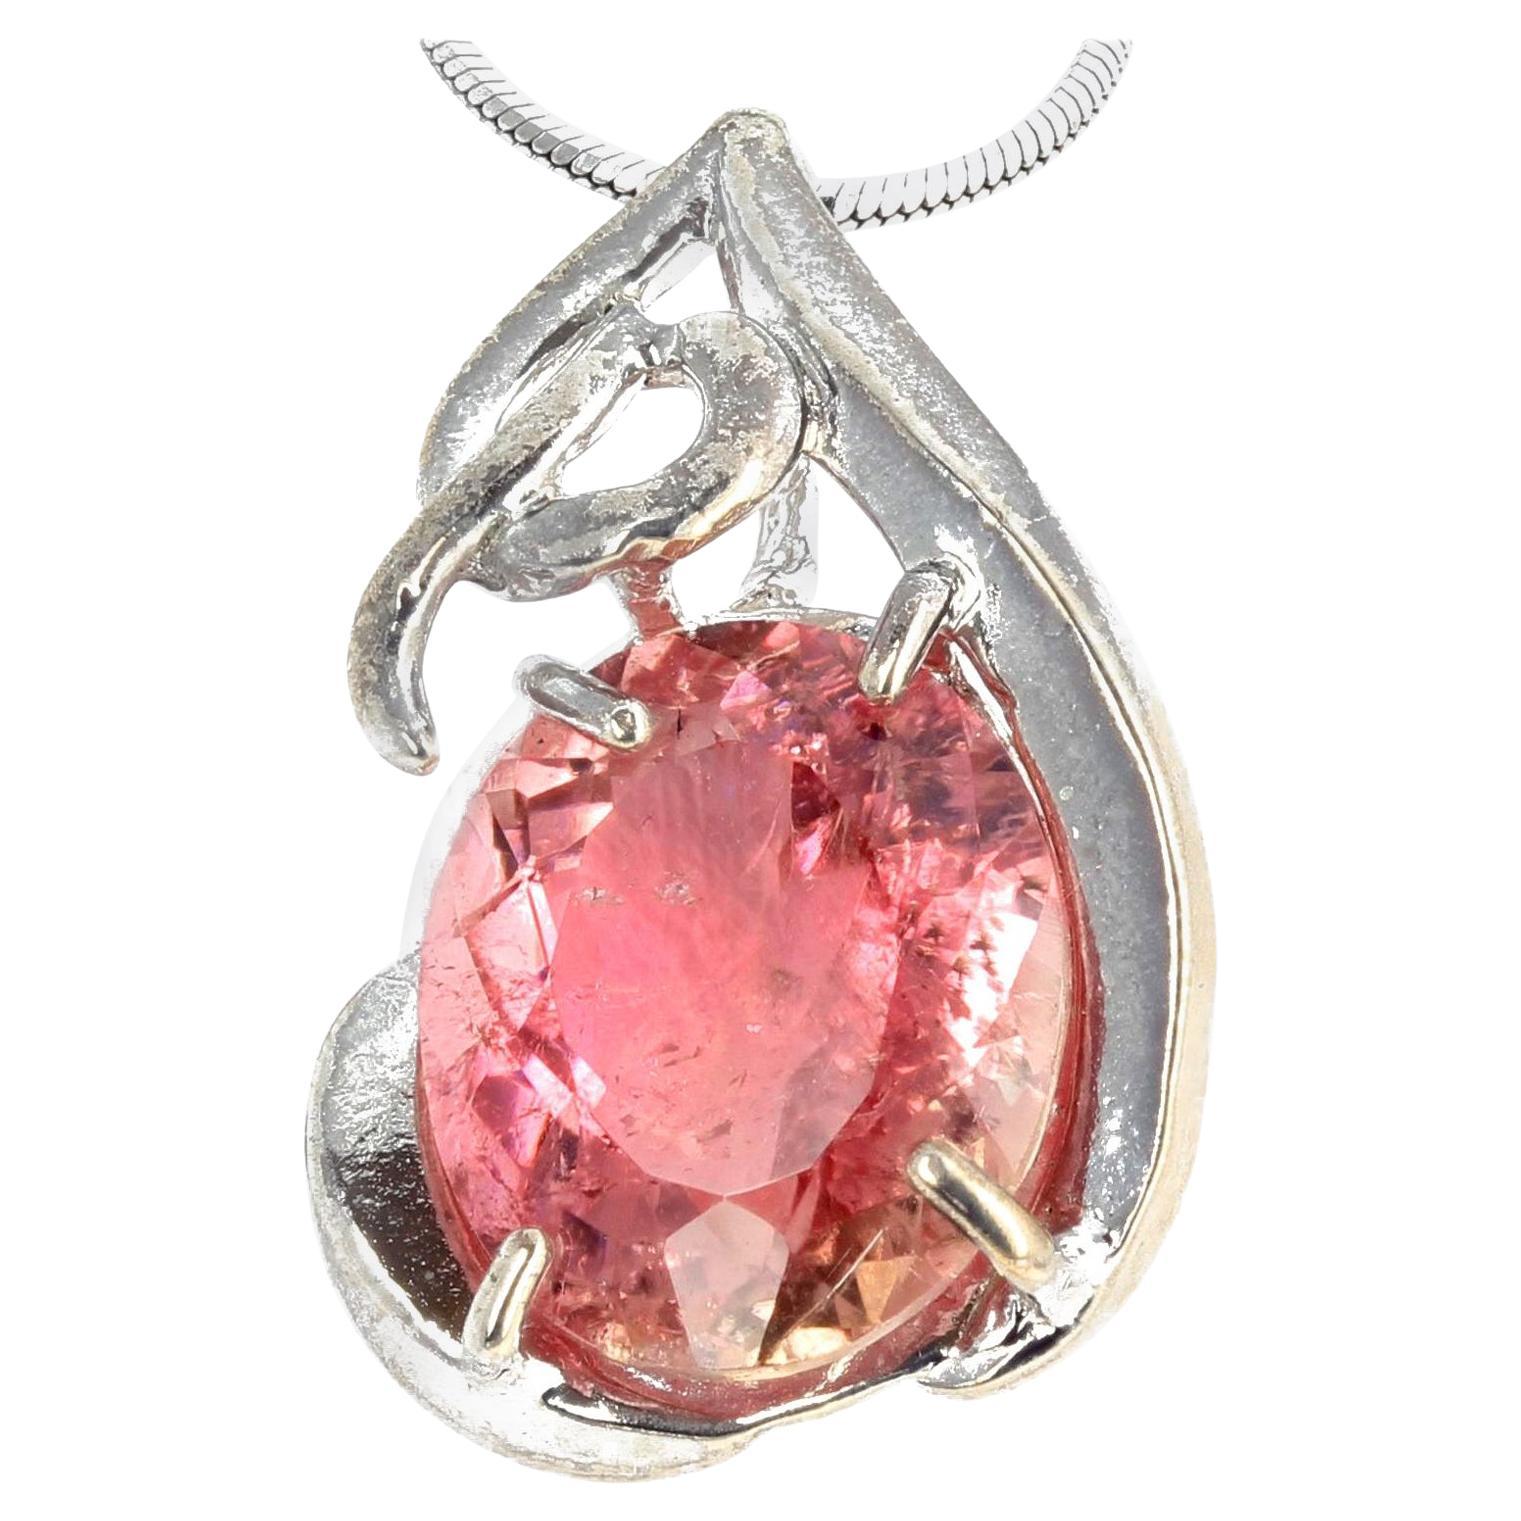 AJD - Superbe pendentif en argent avec tourmaline naturelle rose vif/ abricot de 7 carats